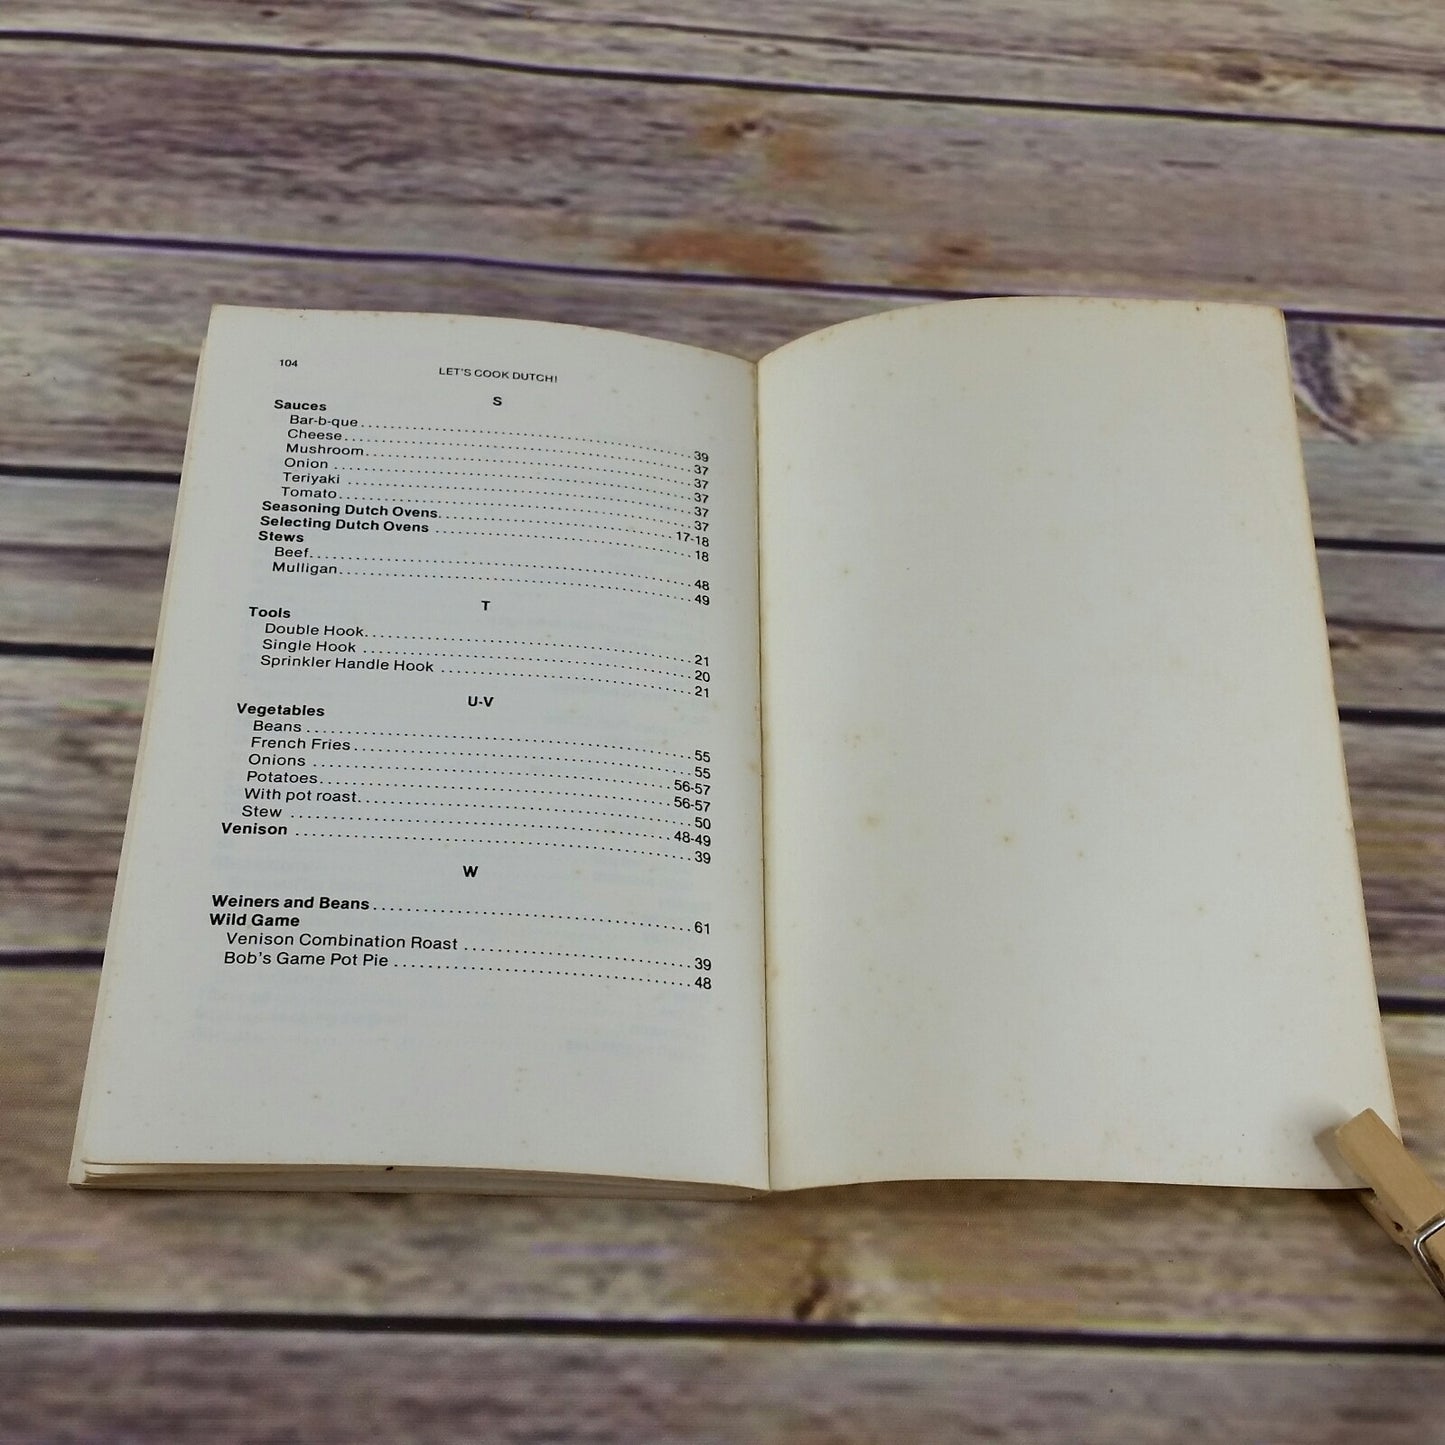 Vintage Dutch Oven Cookbook Lets Cook Dutch Vtg Recipes 1979 Robert Ririe Paperback - At Grandma's Table